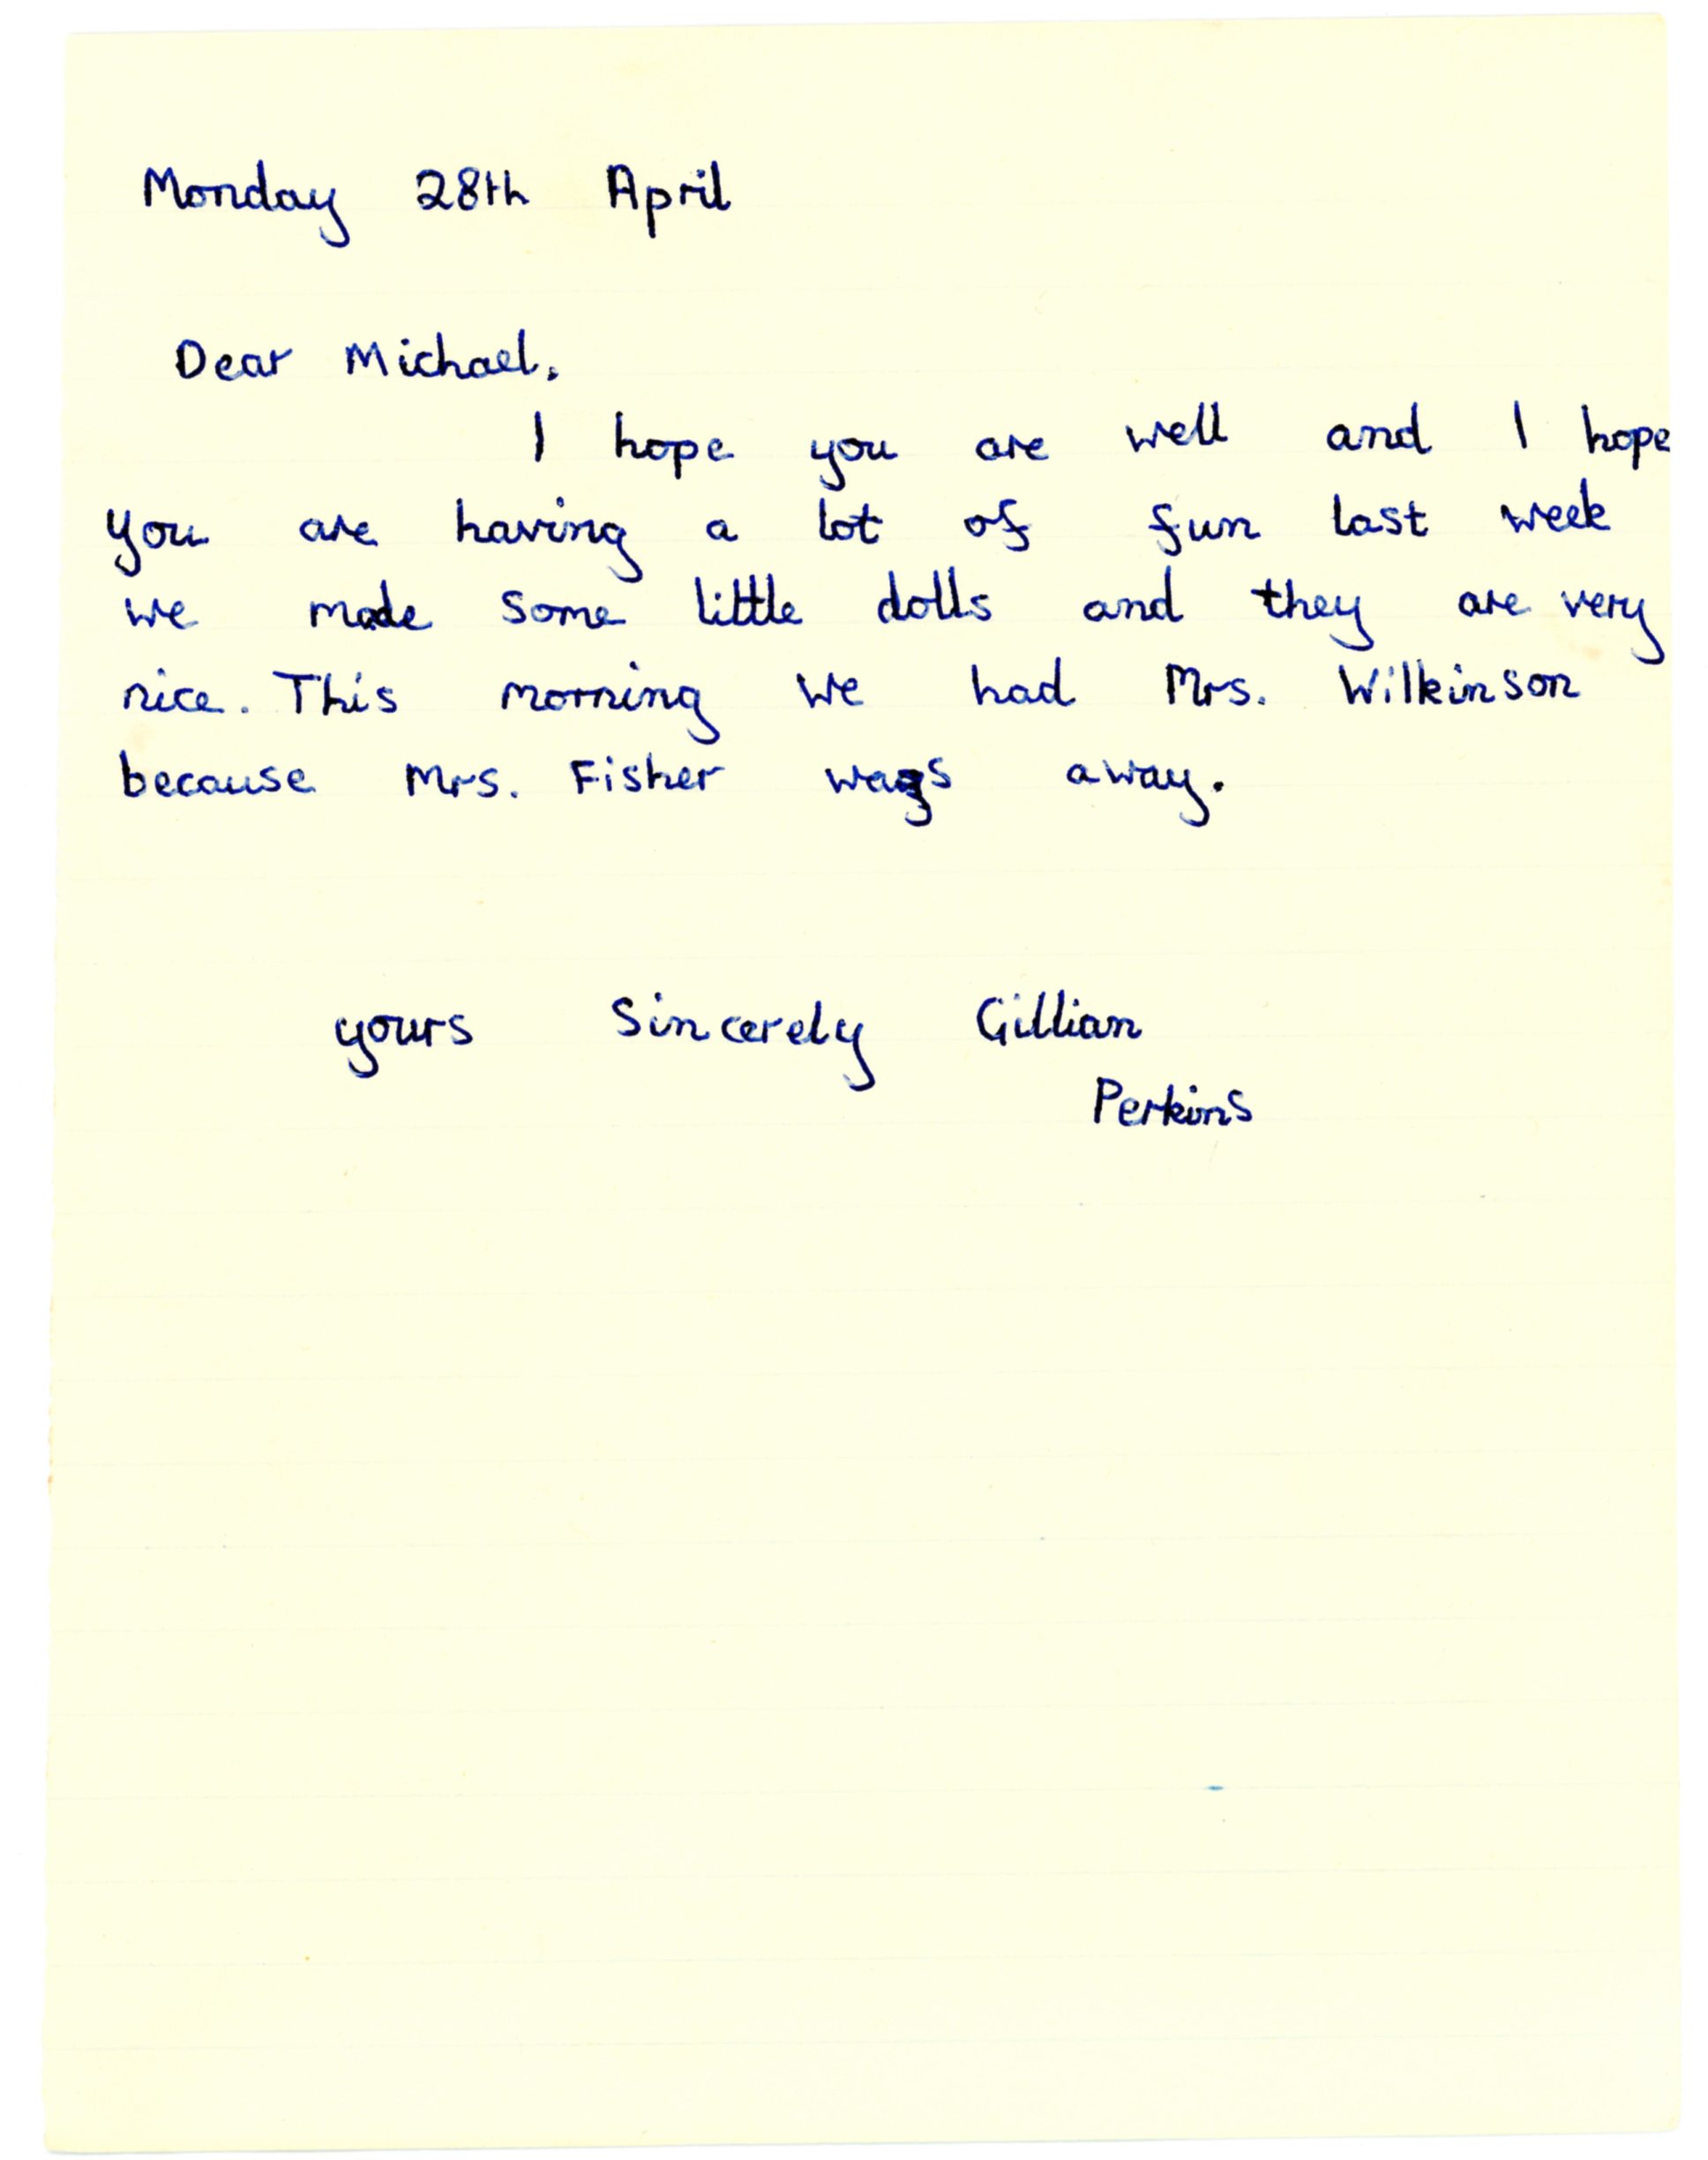 Gillian Perkins' original letter